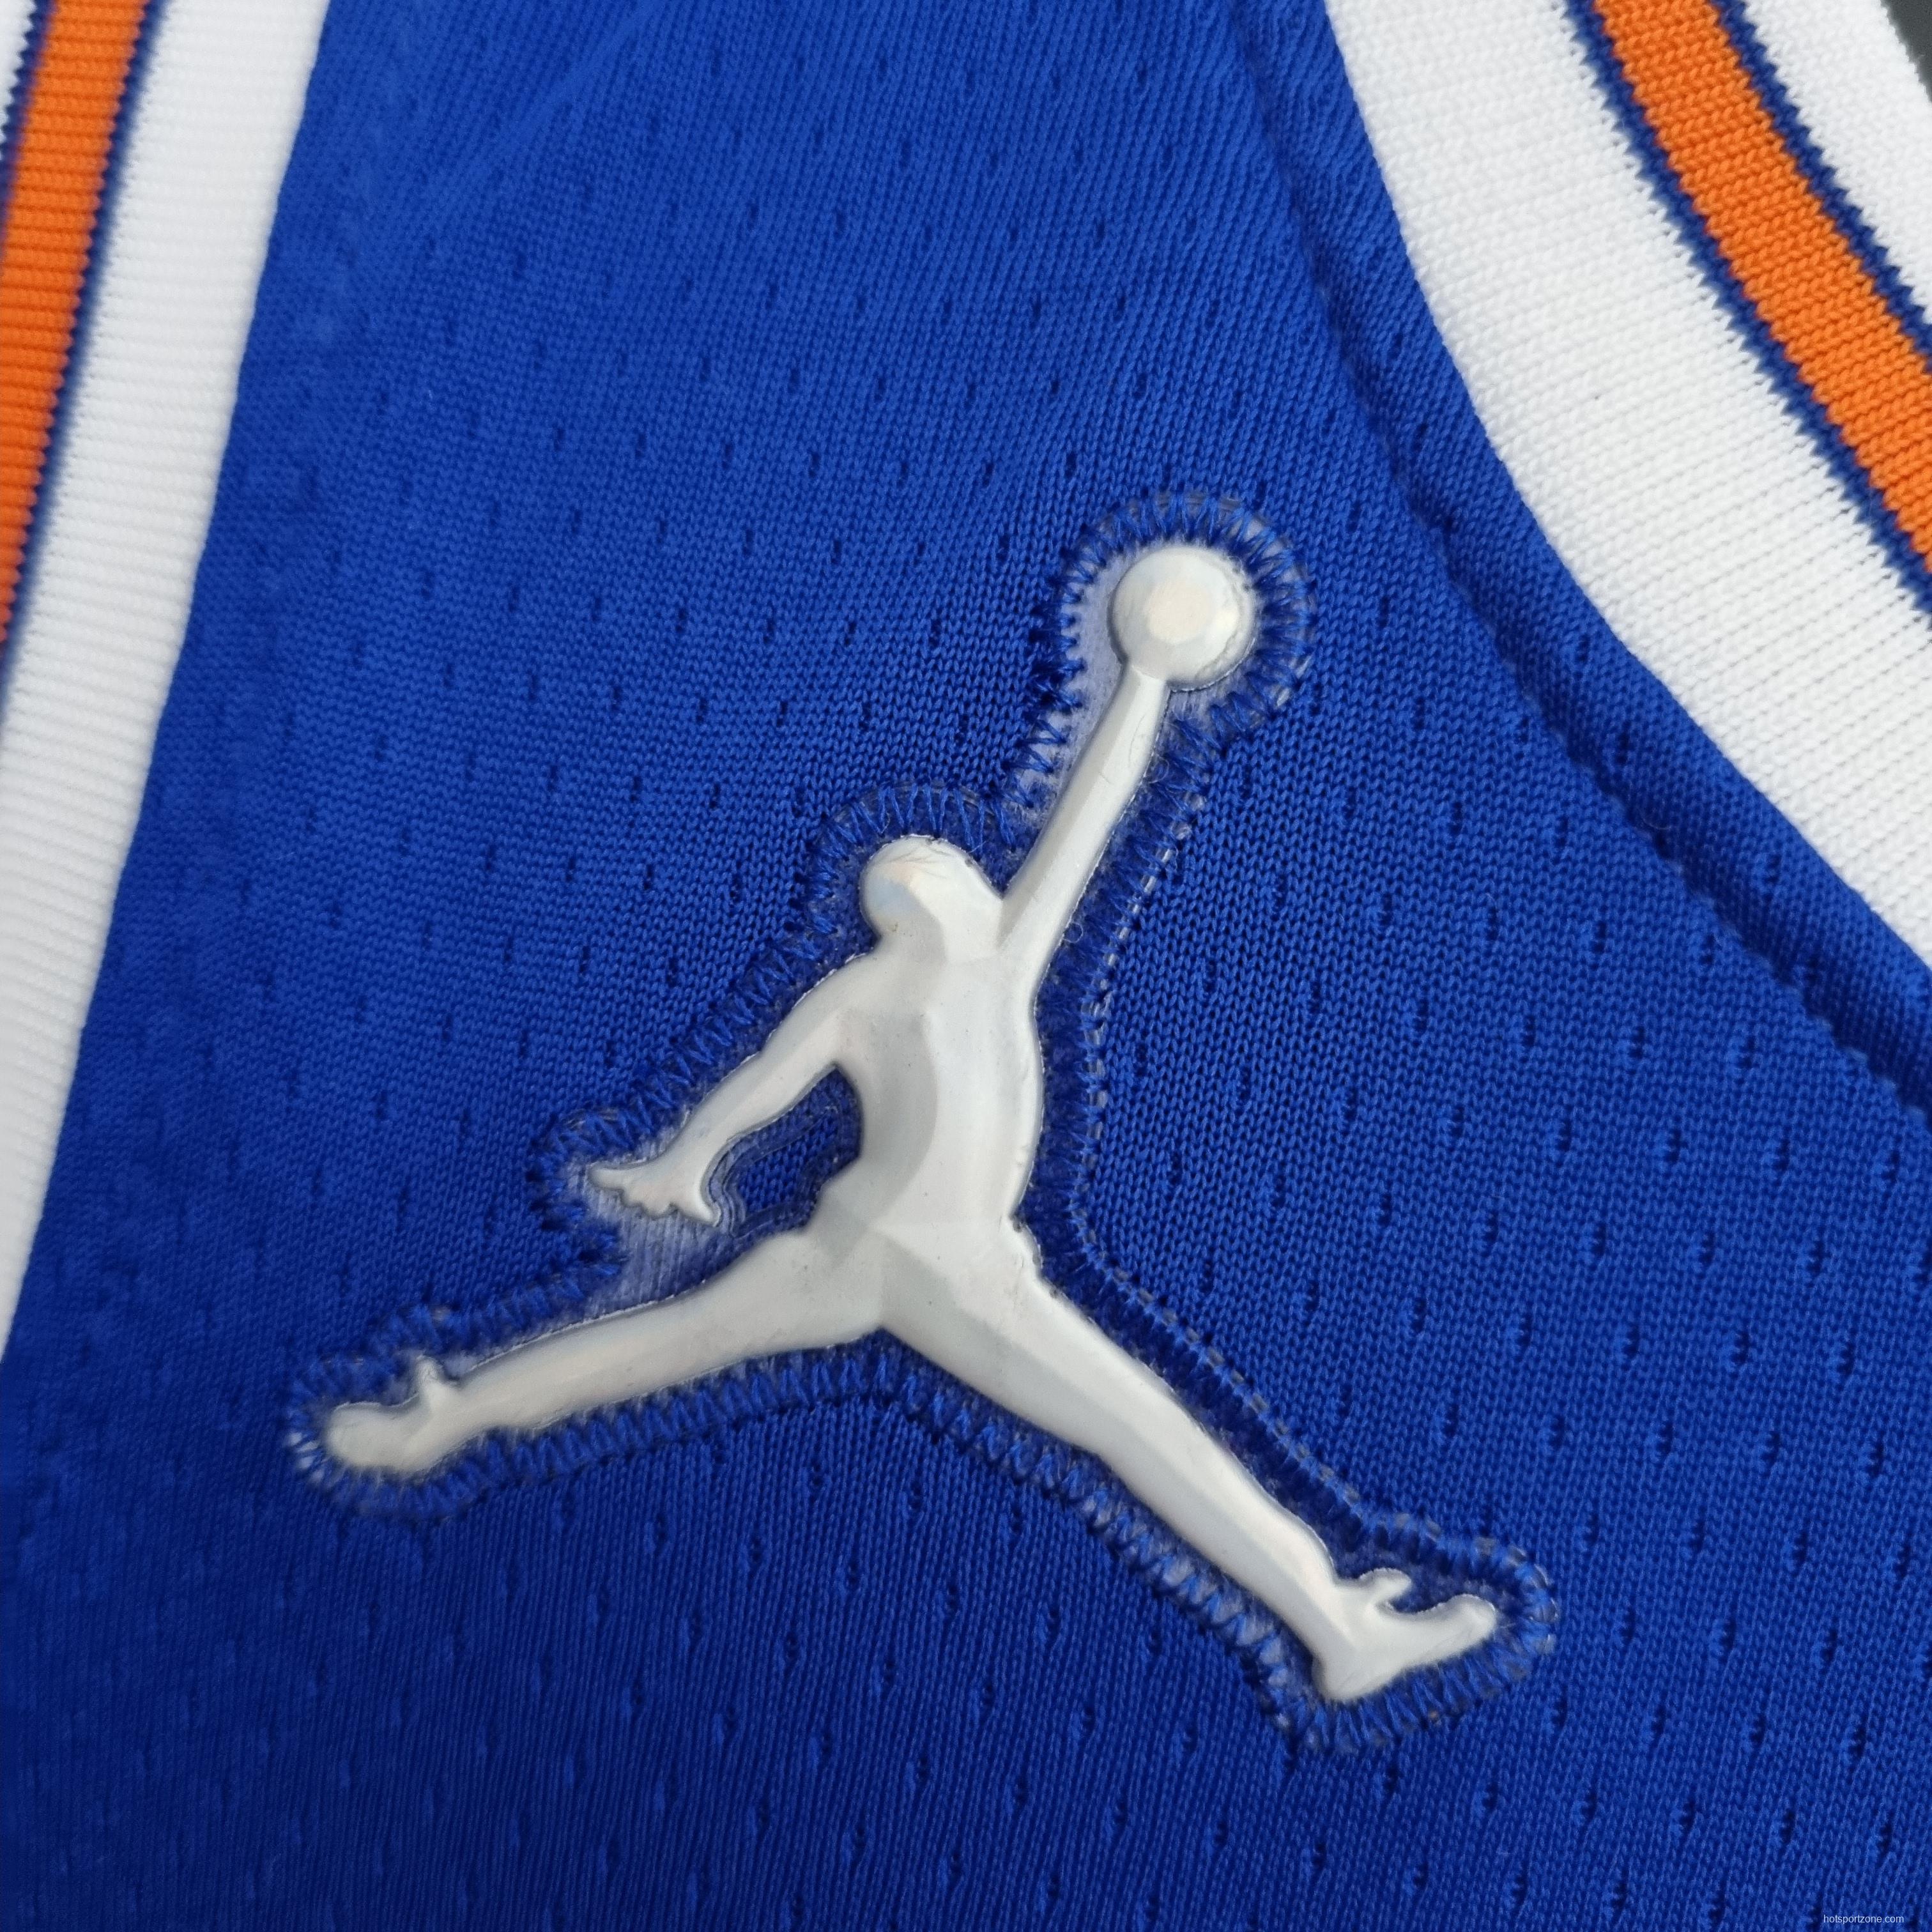 75th Anniversary Barrett#9 New York Knicks Jordan Limited Blue NBA Jersey